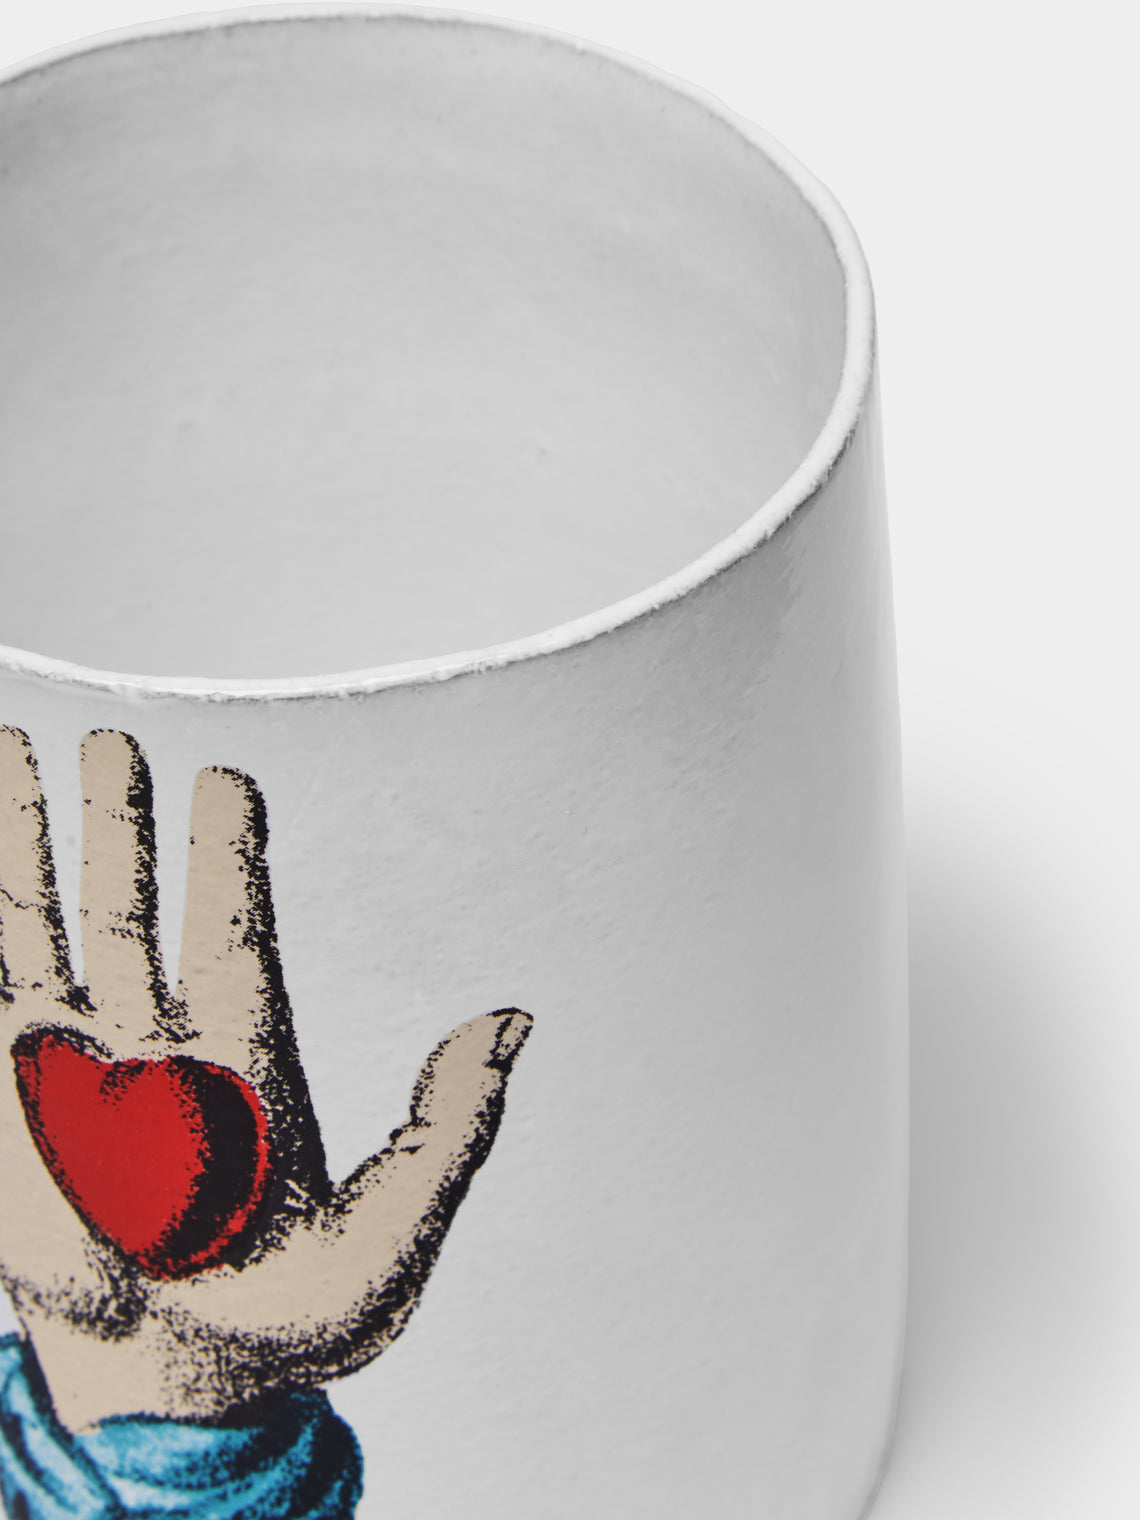 Astier de Villatte - Heart in Hand Vase -  - ABASK